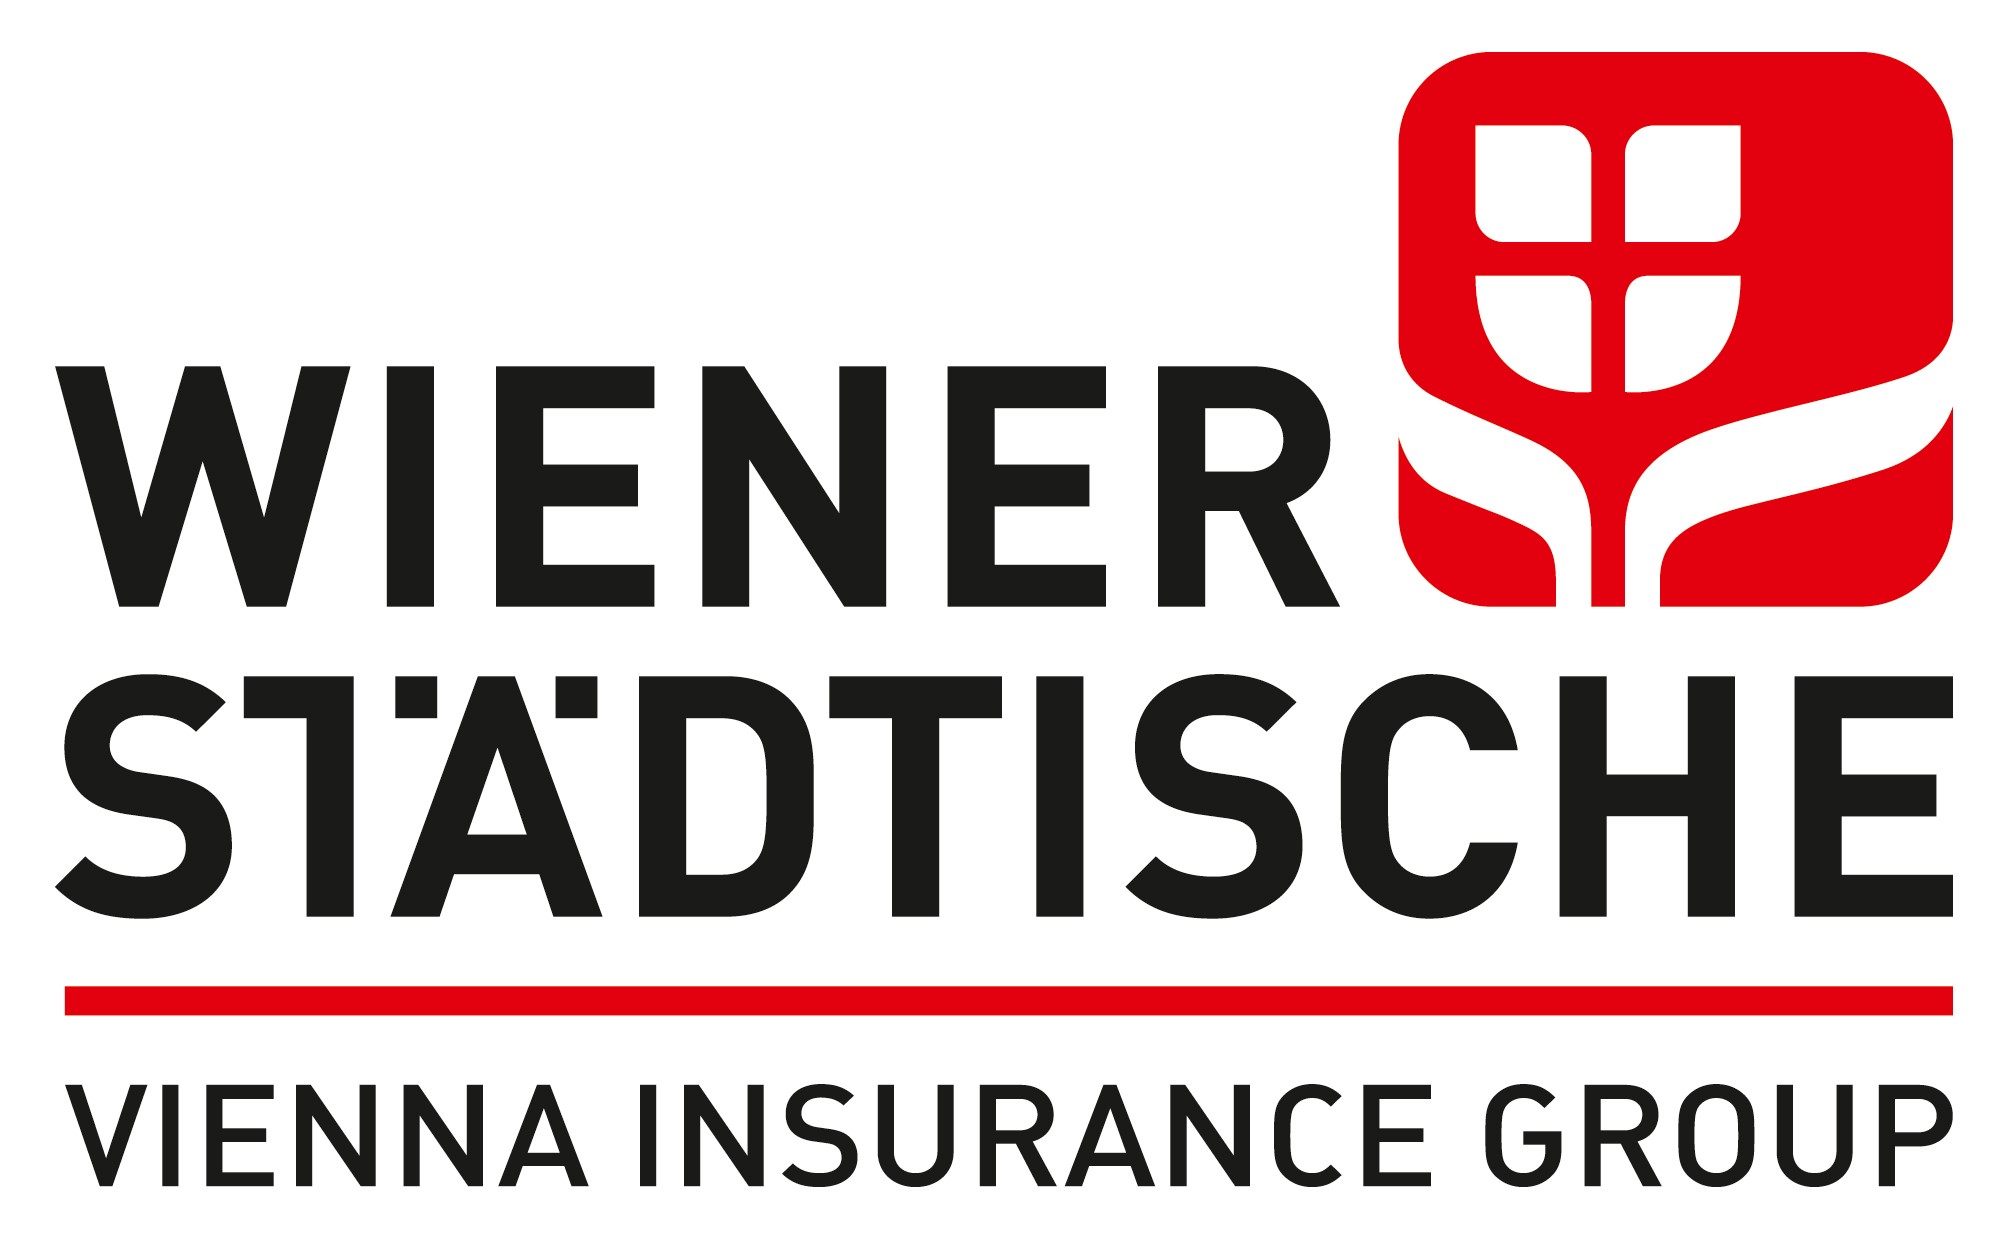 Wiener Städtische Vienna Insurance Group